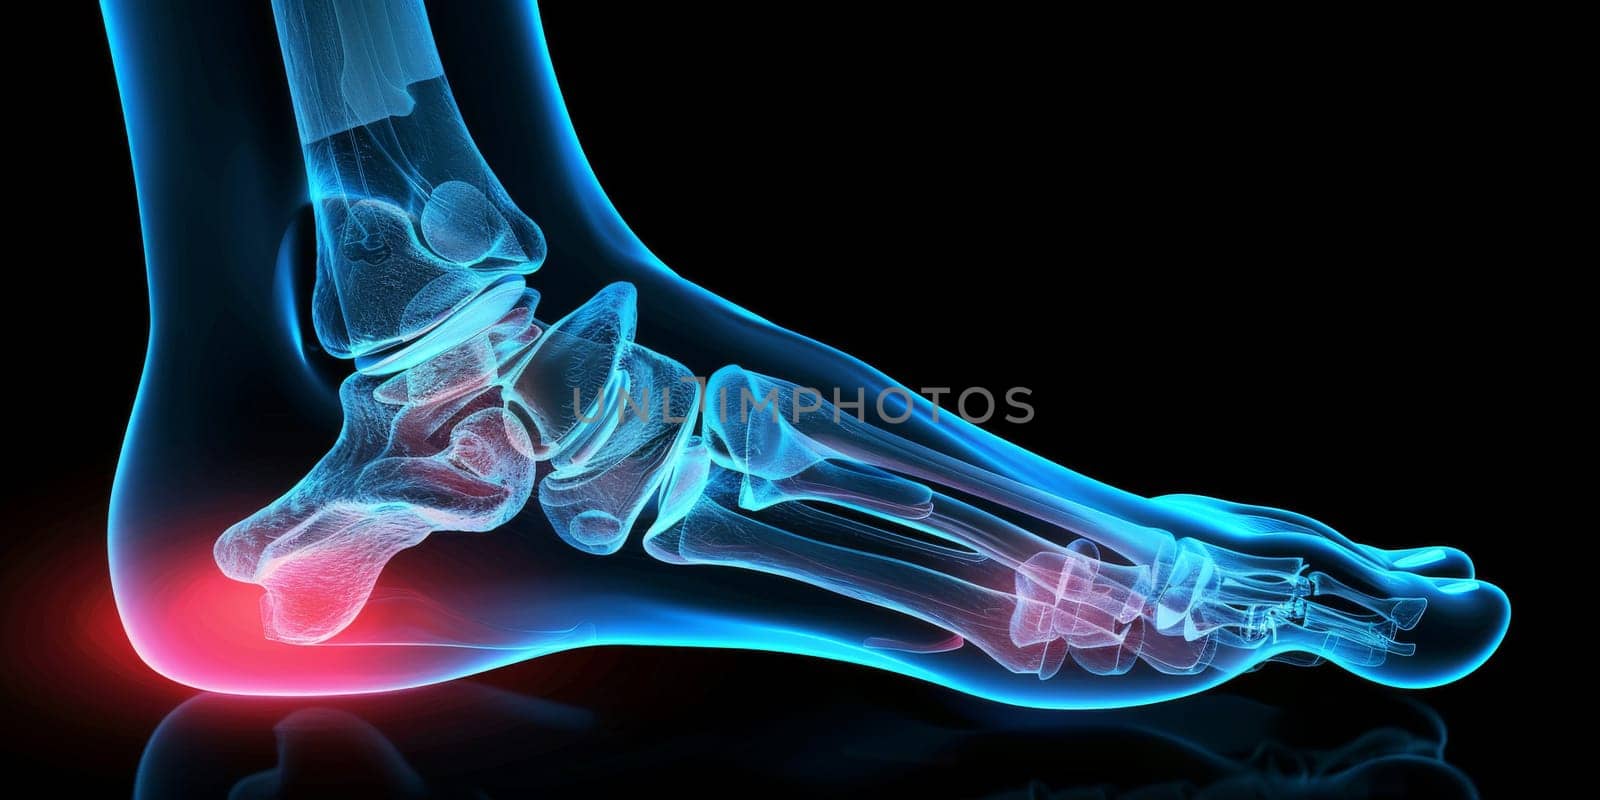 Xray of a human painful feet, lifestyle concept by Kadula